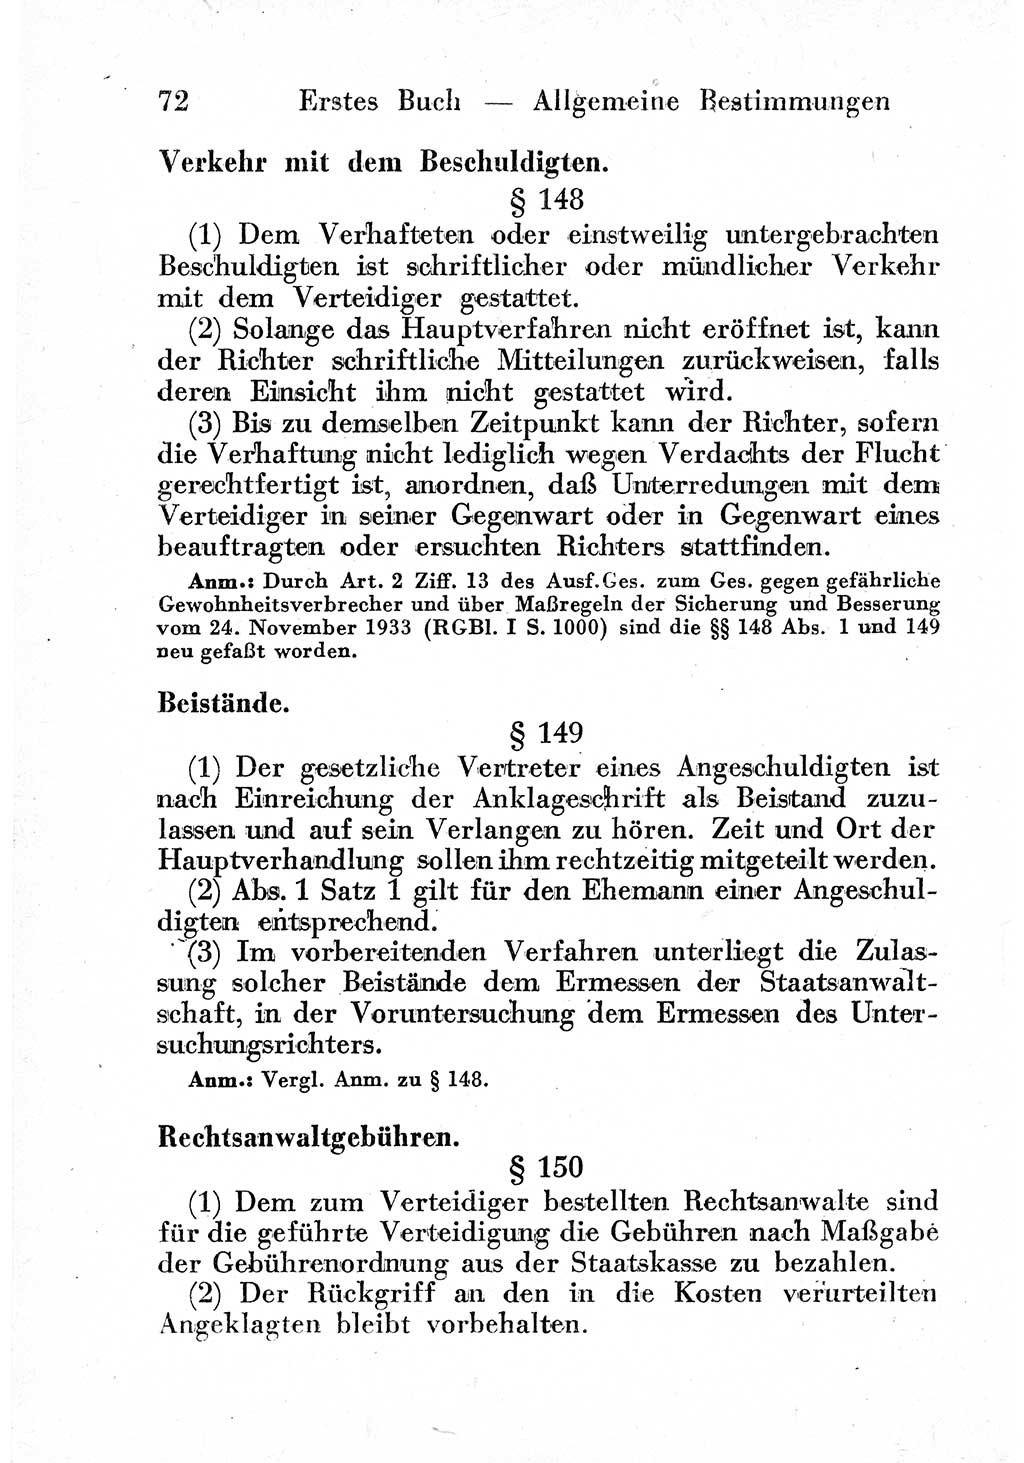 Strafprozeßordnung (StPO), Gerichtsverfassungsgesetz (GVG) und zahlreiche Nebengesetze der sowjetischen Besatzungszone (SBZ) in Deutschland 1949, Seite 72 (StPO GVG Ges. SBZ Dtl. 1949, S. 72)